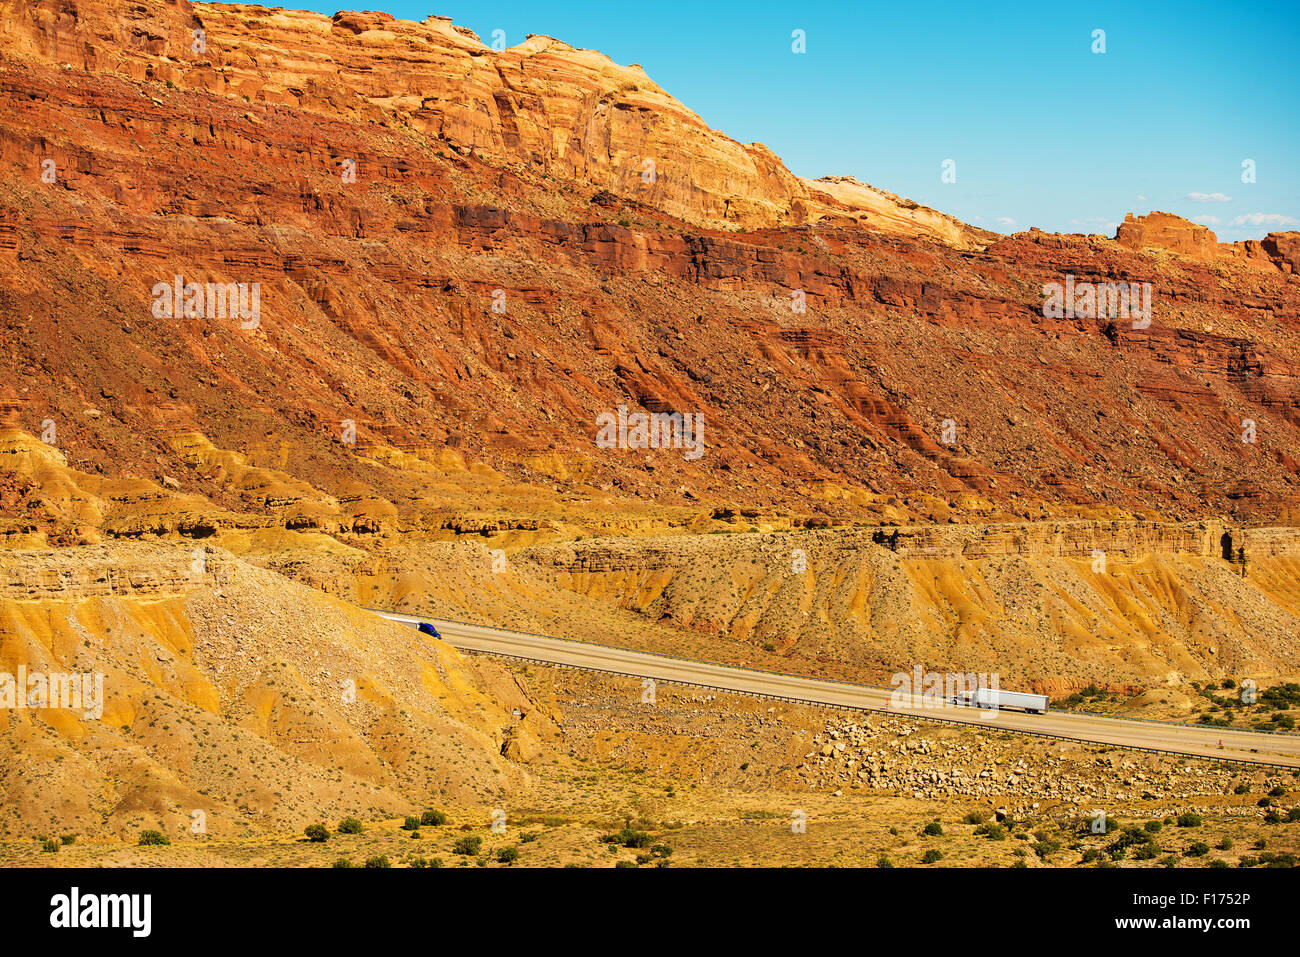 Los camiones en la autopista de Utah. Utah Wilderness paisaje rocoso. American tema del transporte. Foto de stock